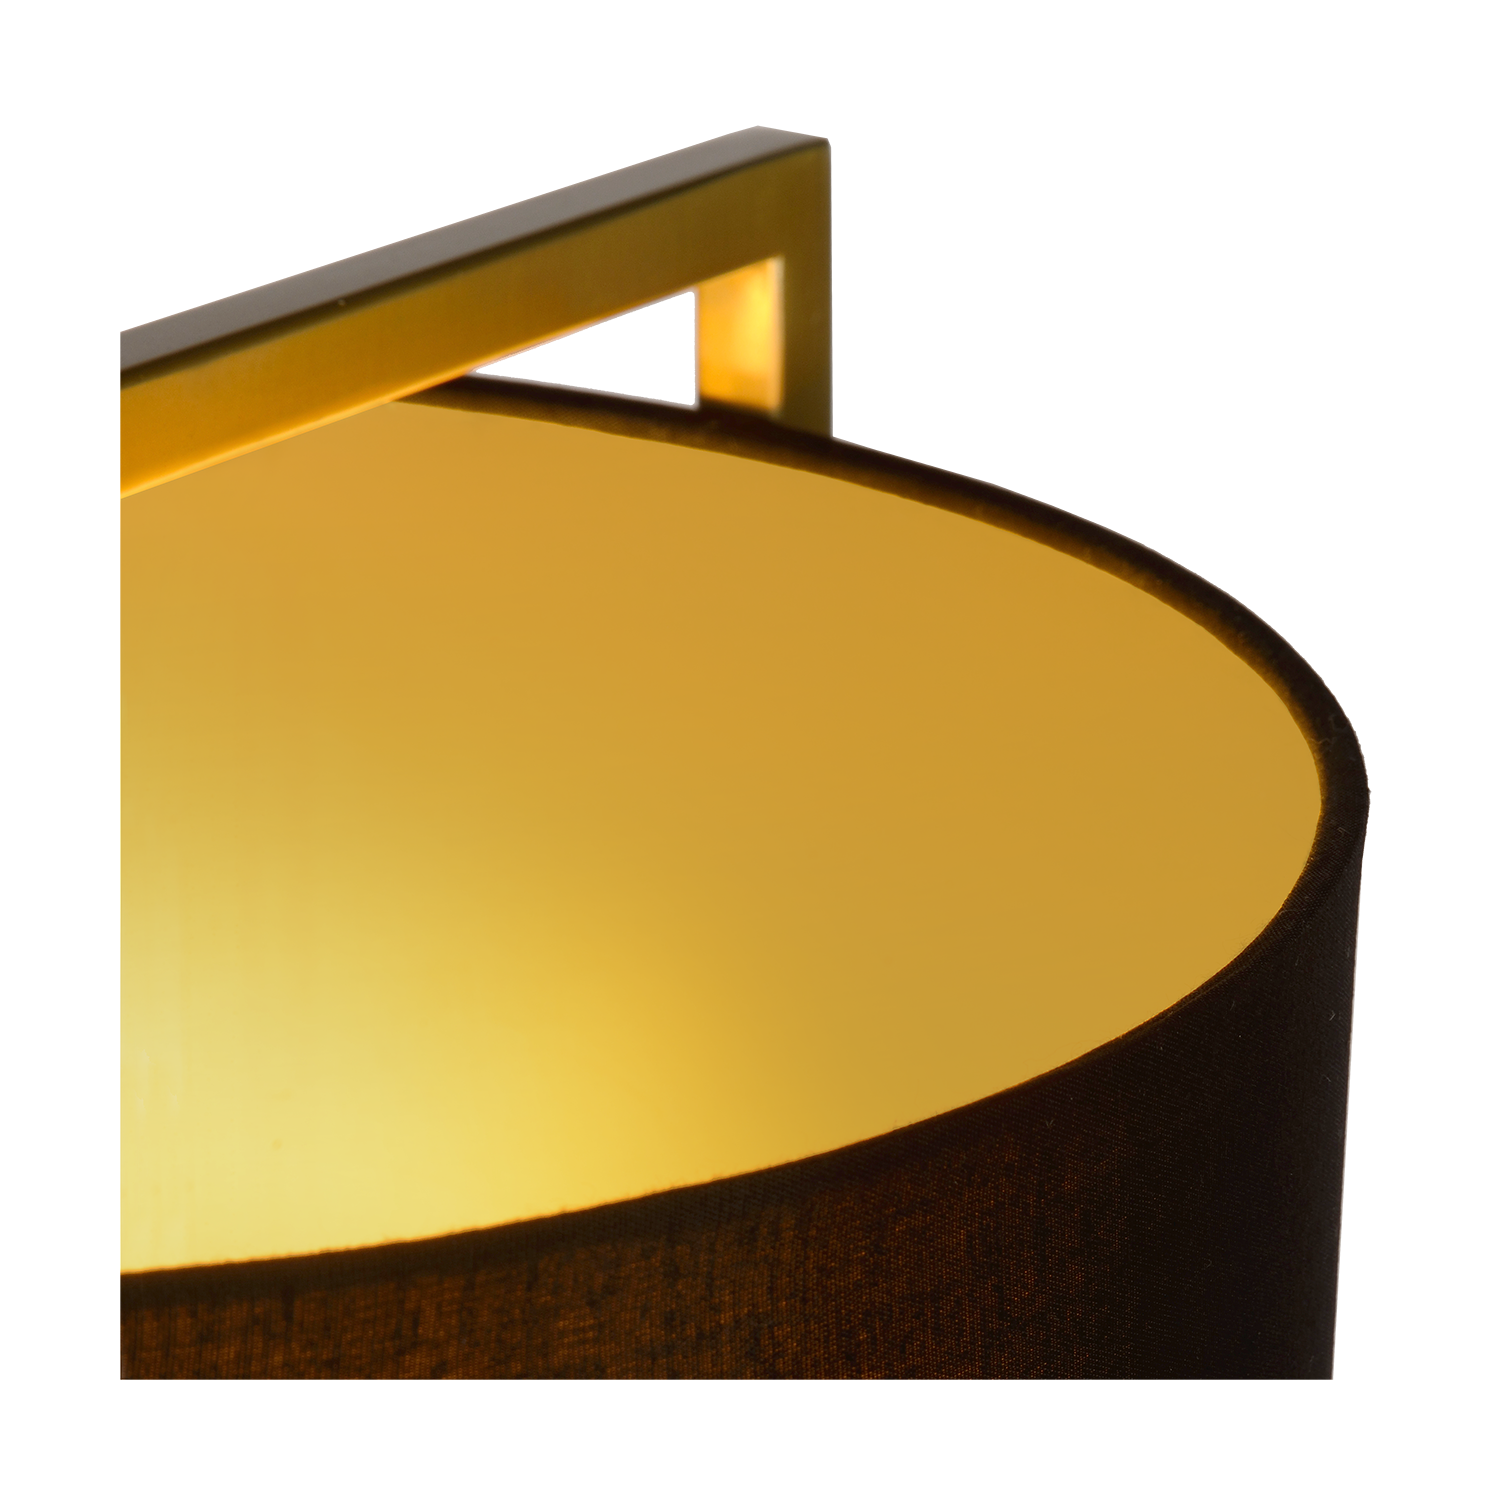 Tafellamp Moyo | antique brass